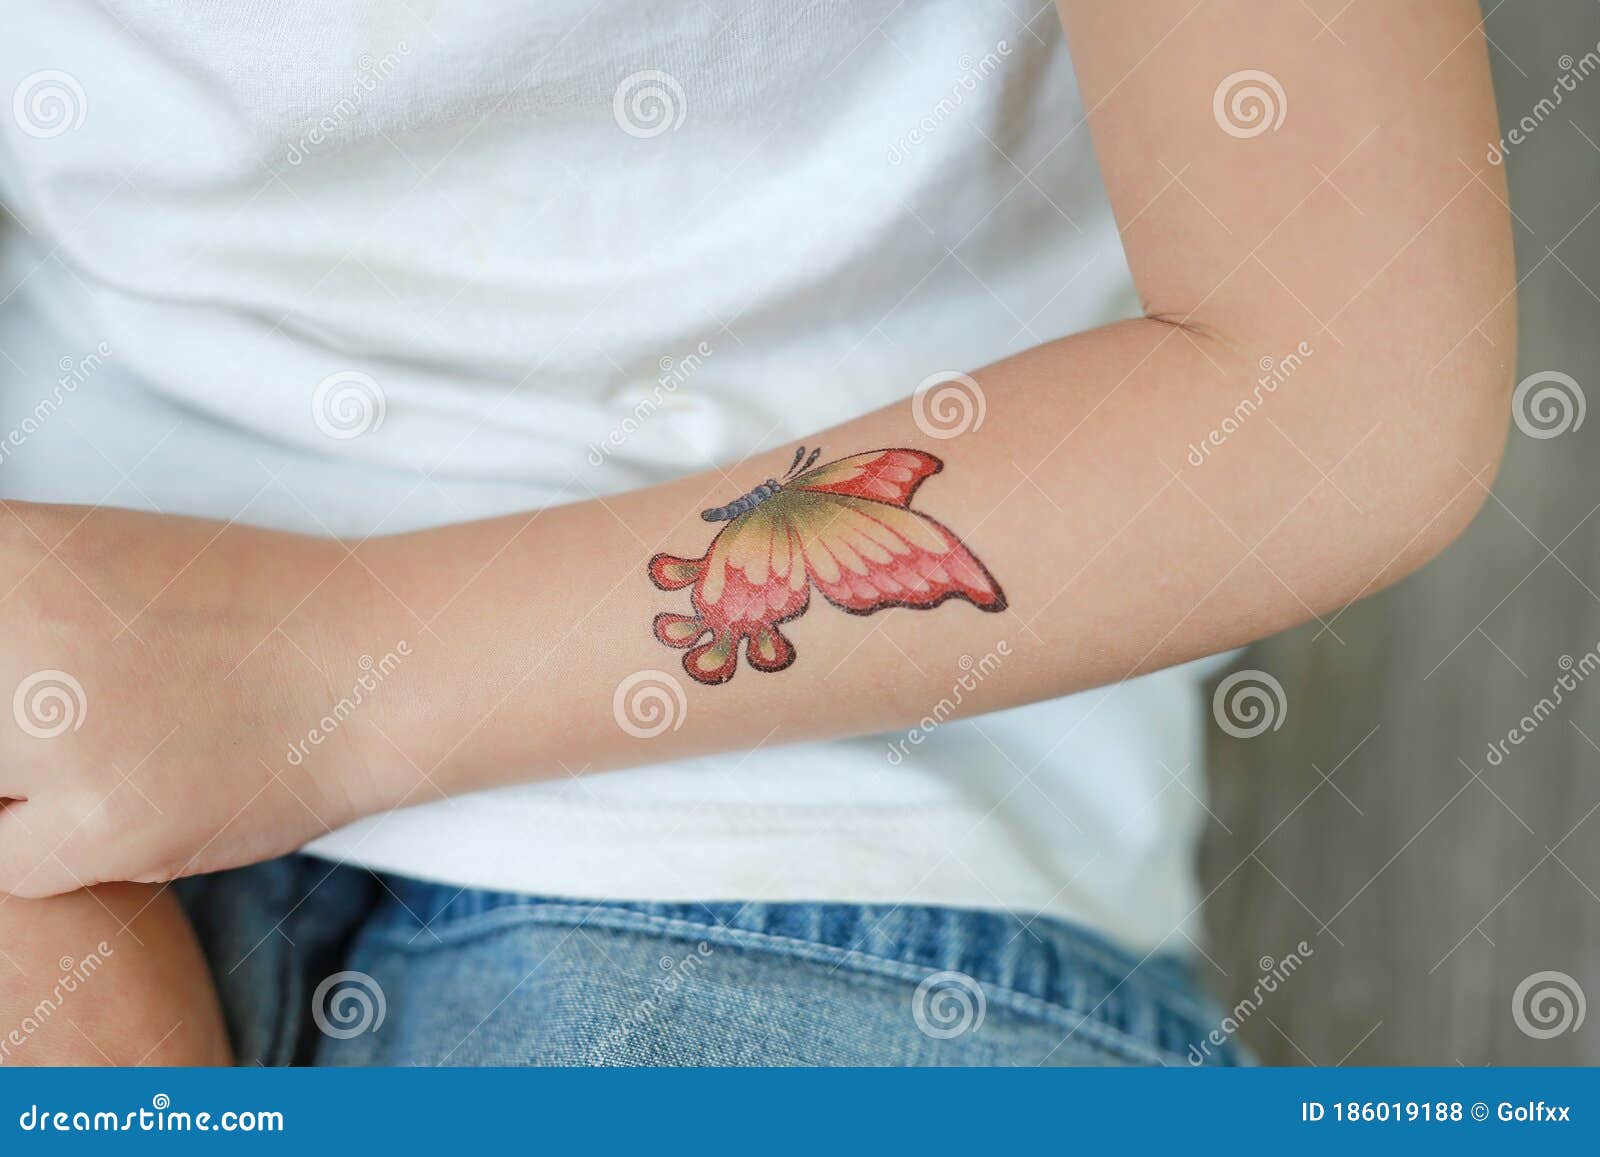 Garotinha De Camisola Com Adesivo De Tatuagem De Borboleta Na Mão